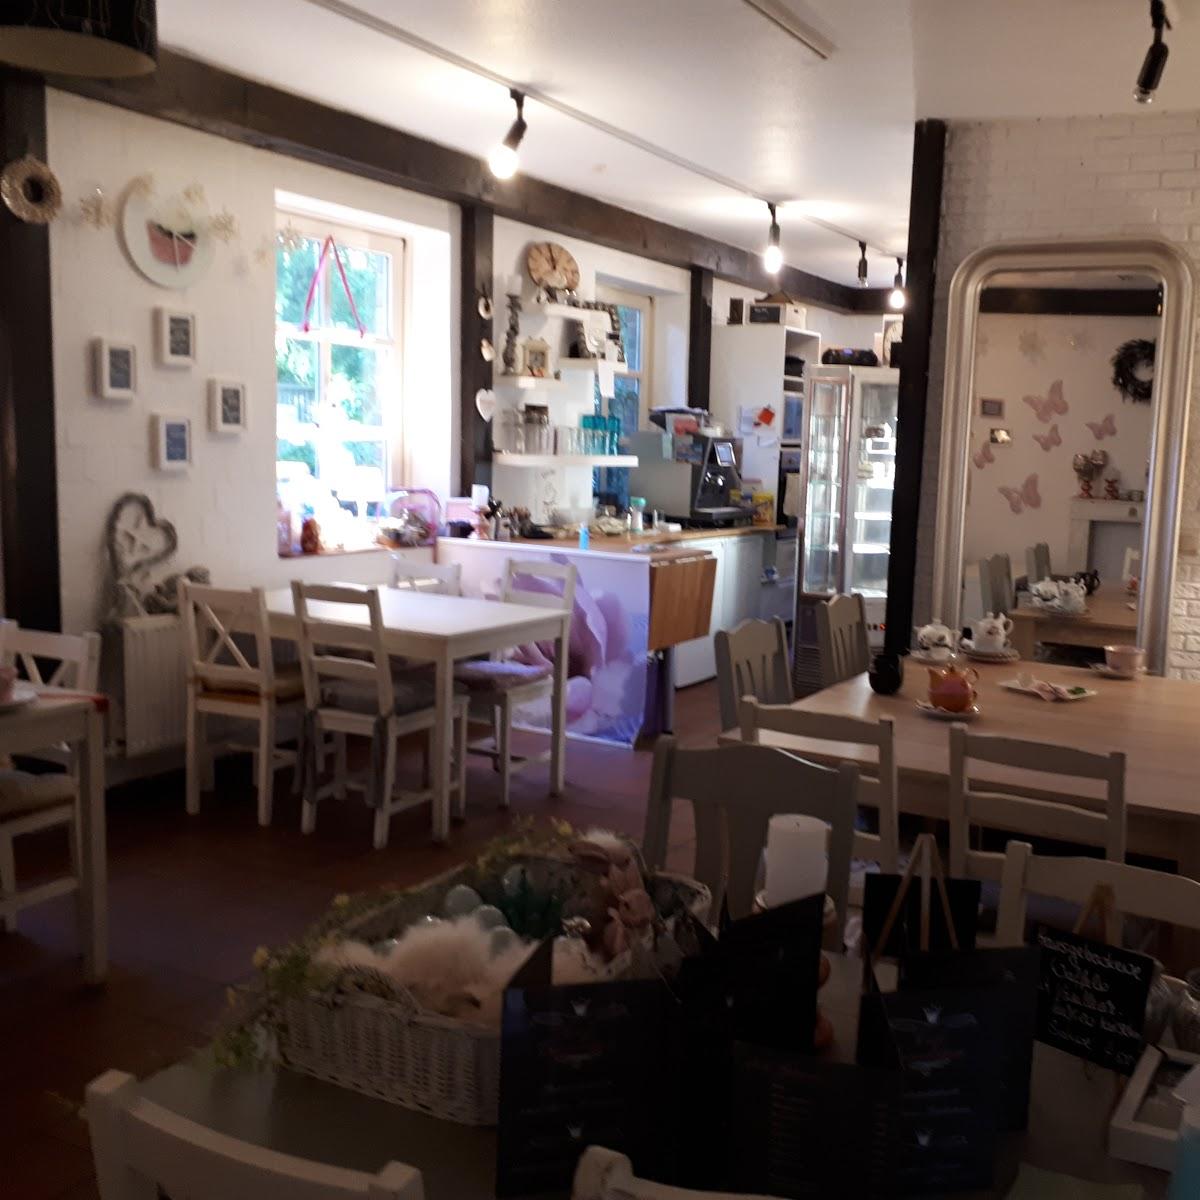 Restaurant "Café Einzelstück" in Worpswede